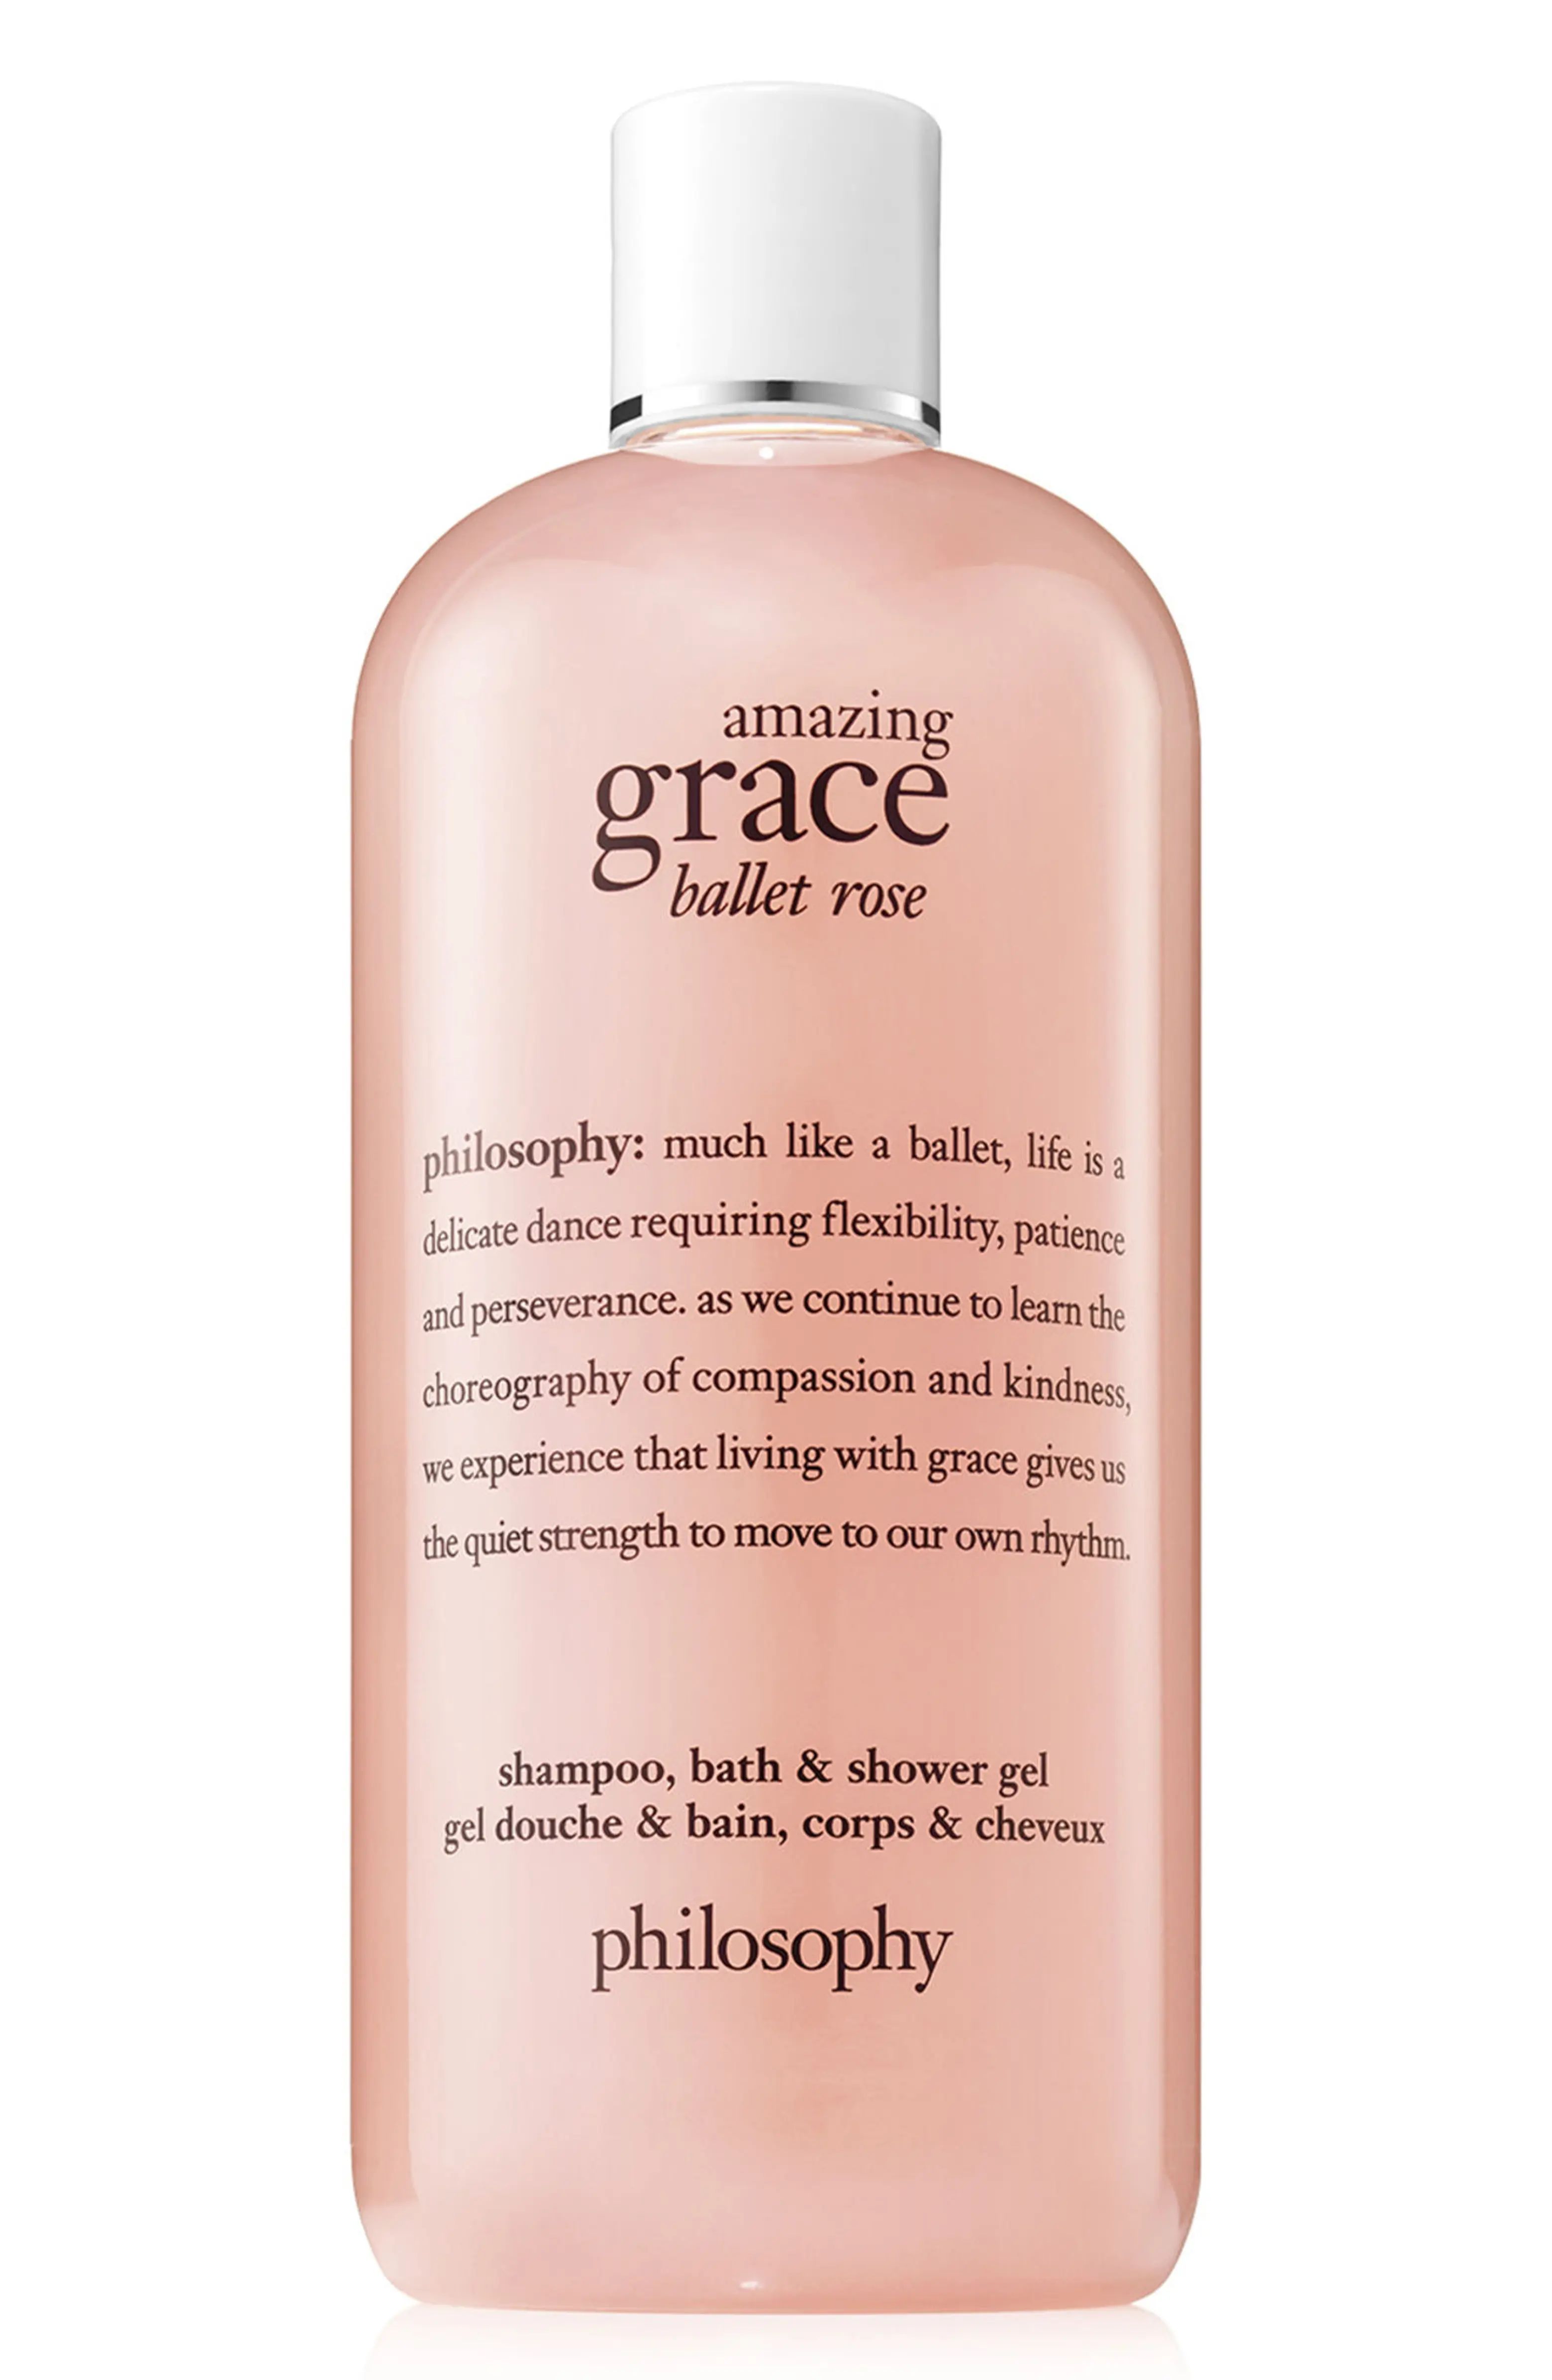 philosophy amazing grace ballet rose shampoo, bath & shower gel | Nordstrom | Nordstrom